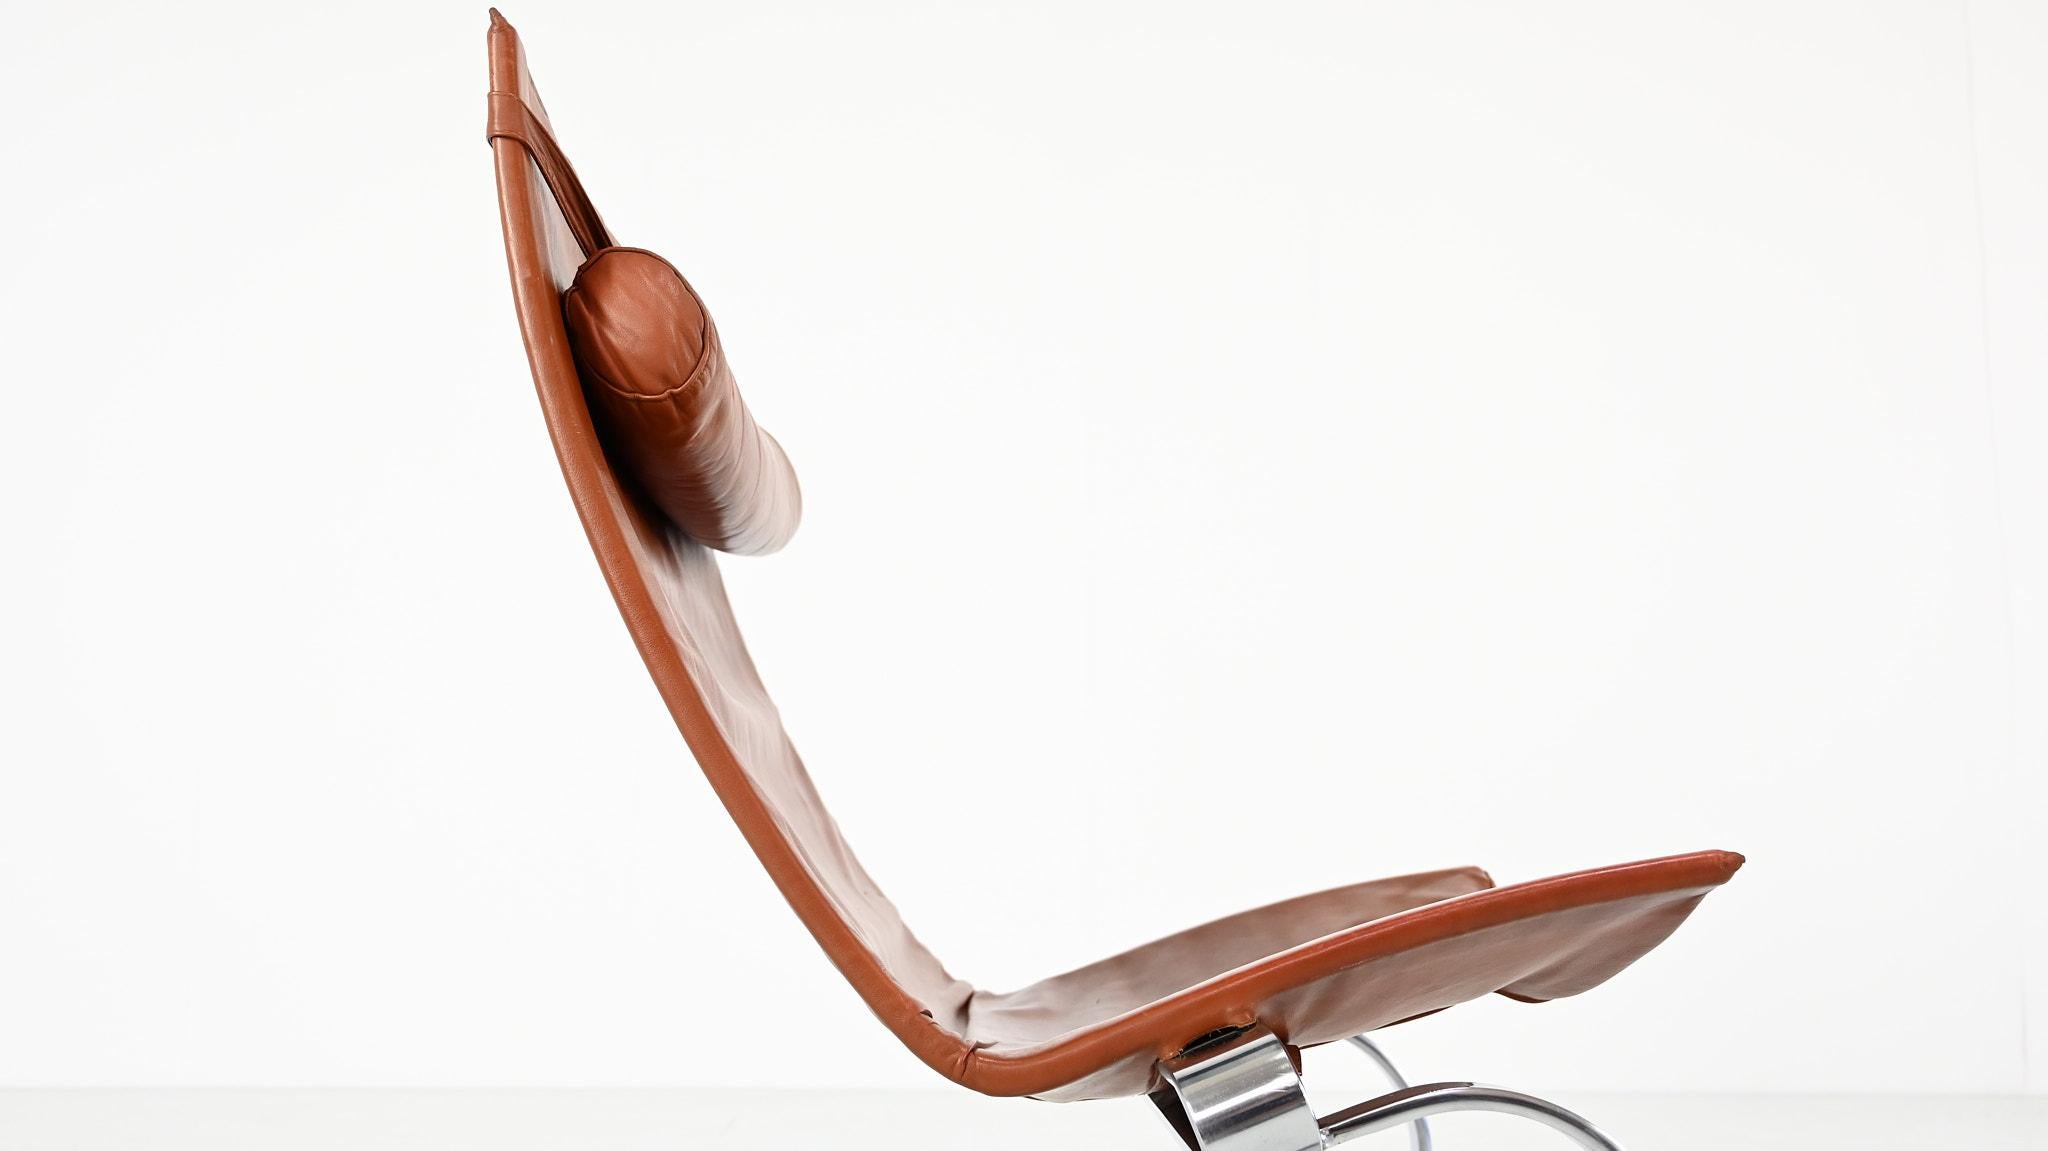 Poul Kjaerholm PK20 Lounge Chair E. Kold Christensen Denmark Steel Leather 1968 For Sale 6